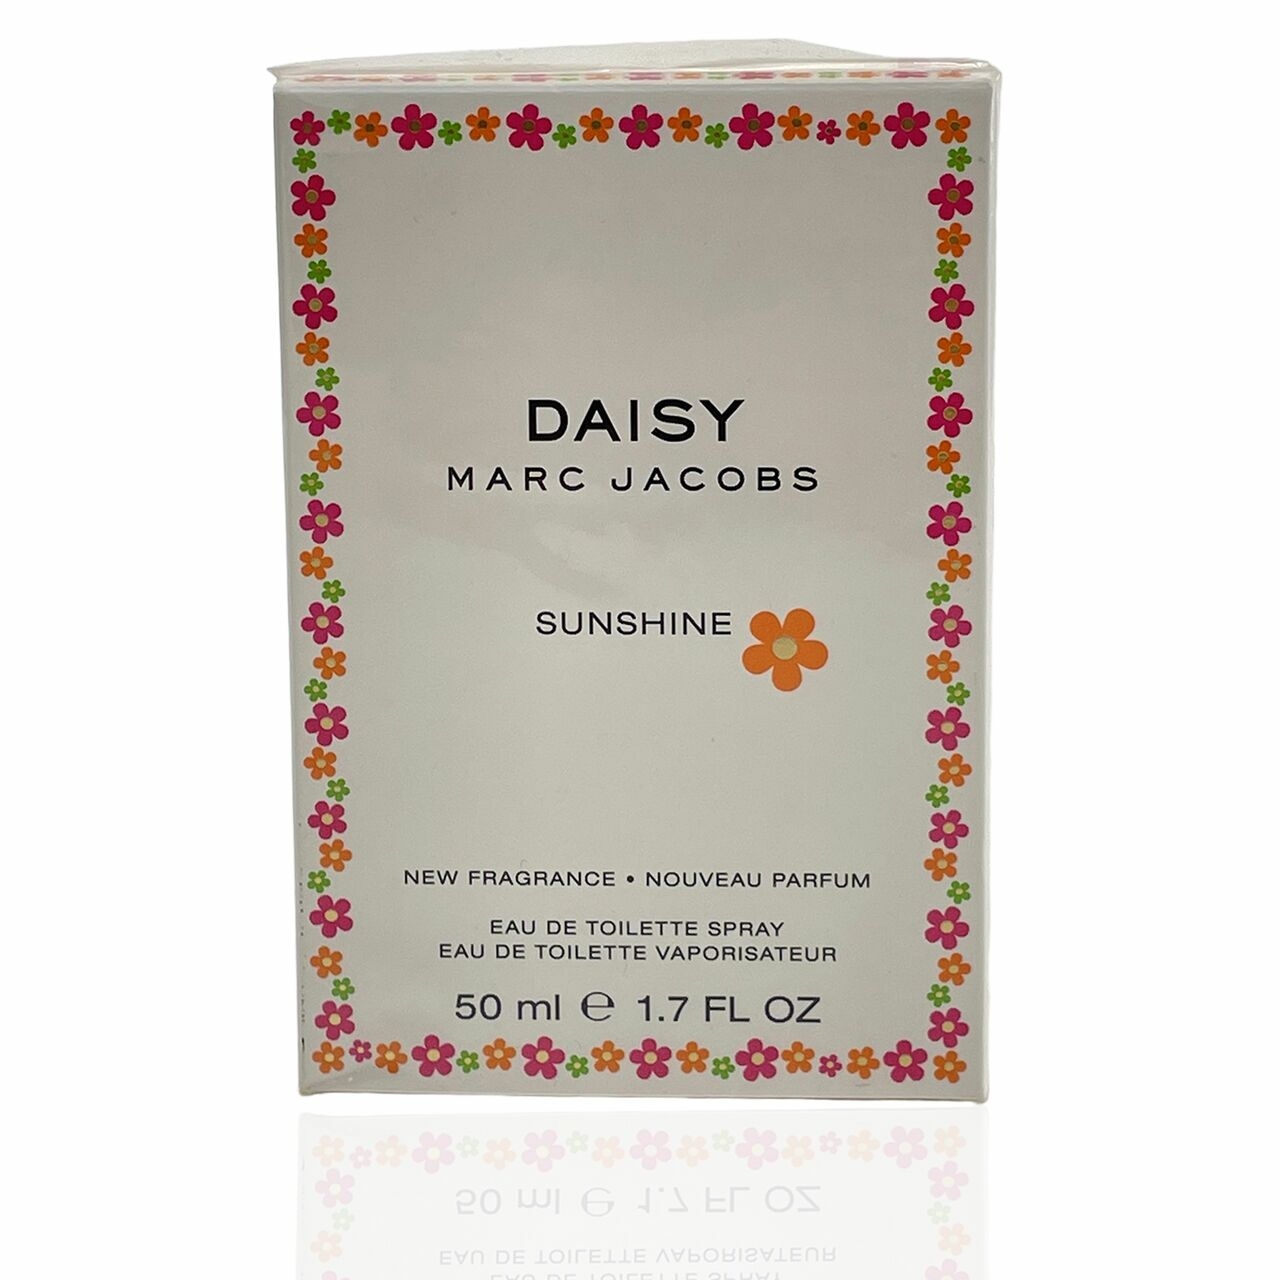 Marc Jacobs Daisy Sunshine Eau de Toilette Fragrance